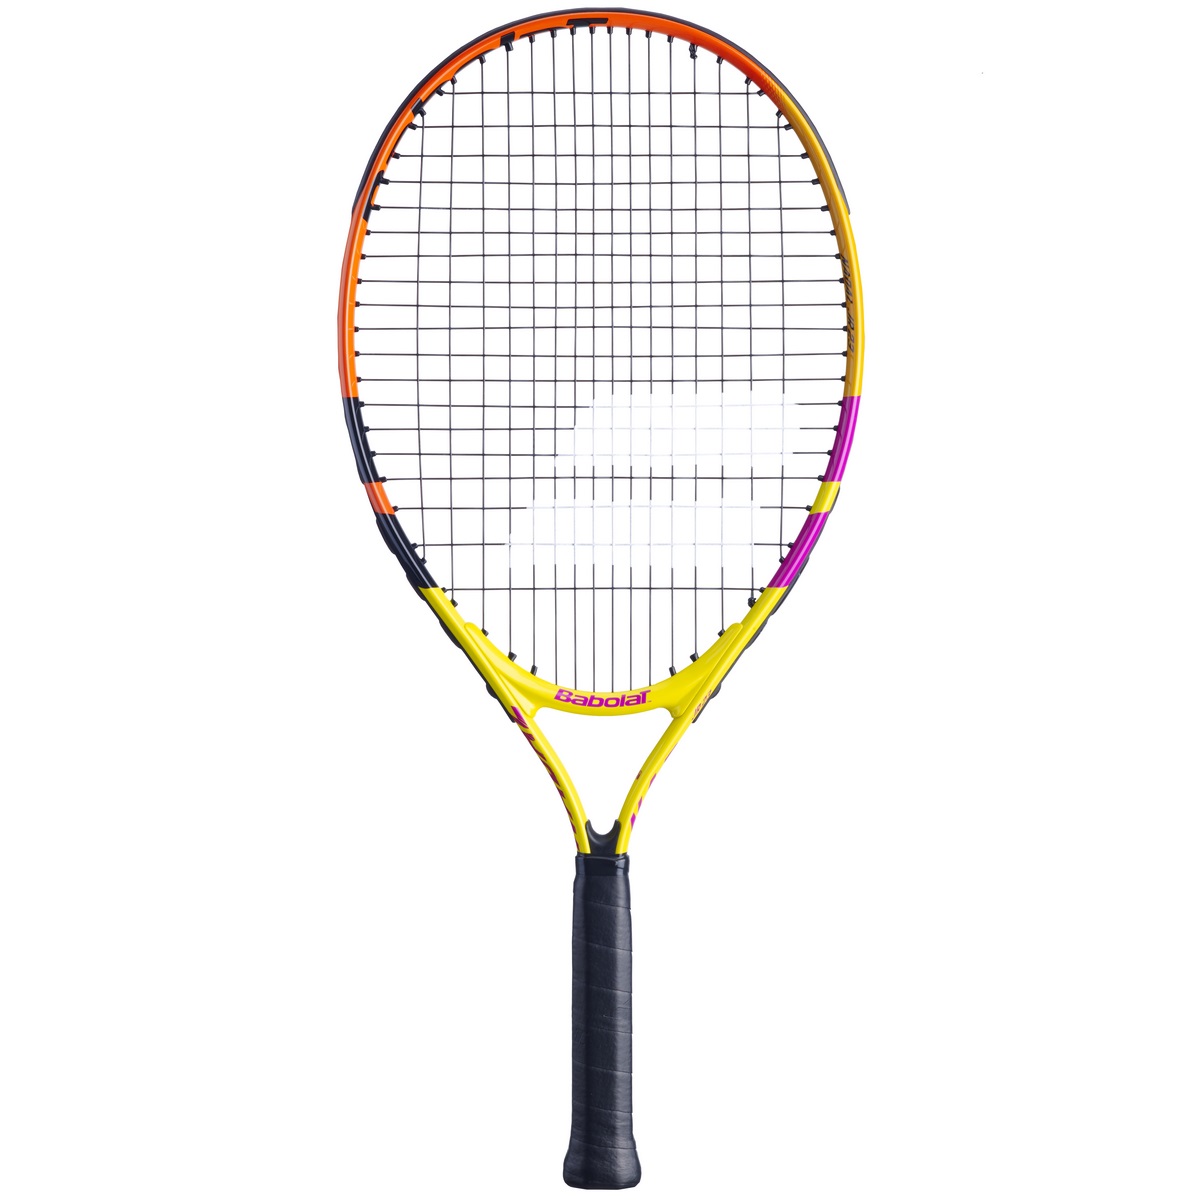 Ракетка для большого тенниса Babolat Nadal Jr 23 140456-100 желтый/оранжевый